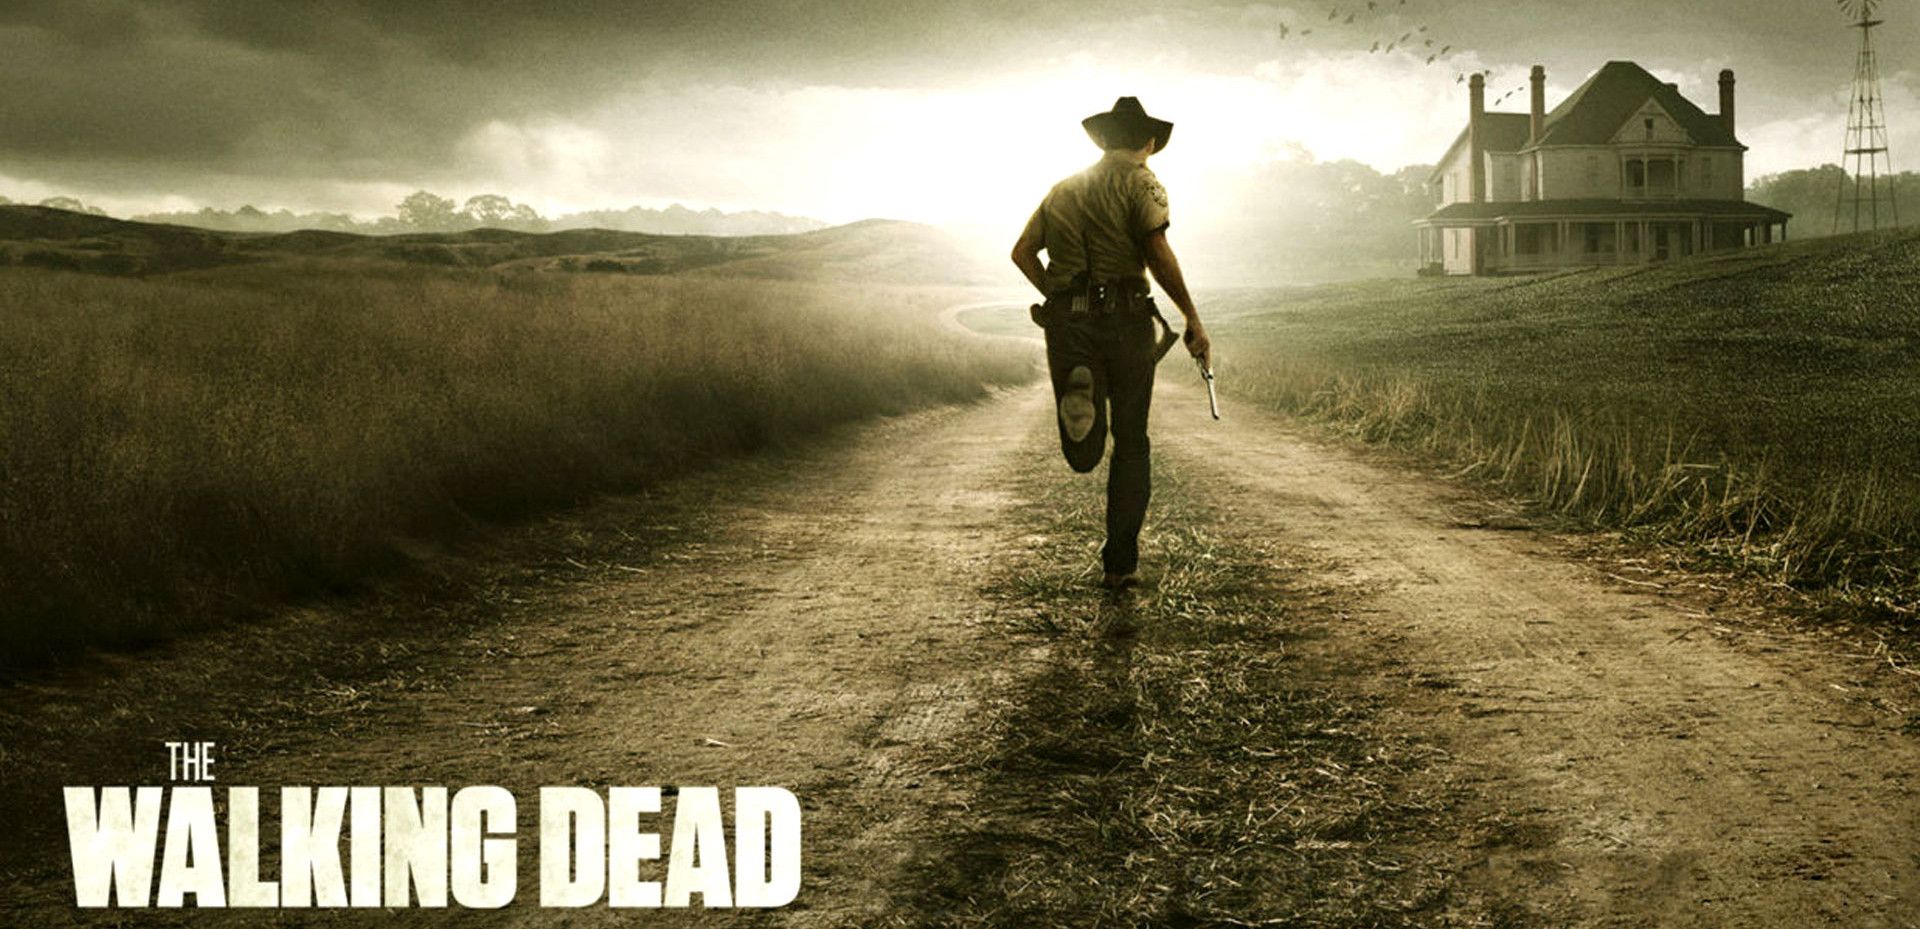 Walking Dead Wallpaper 1080p